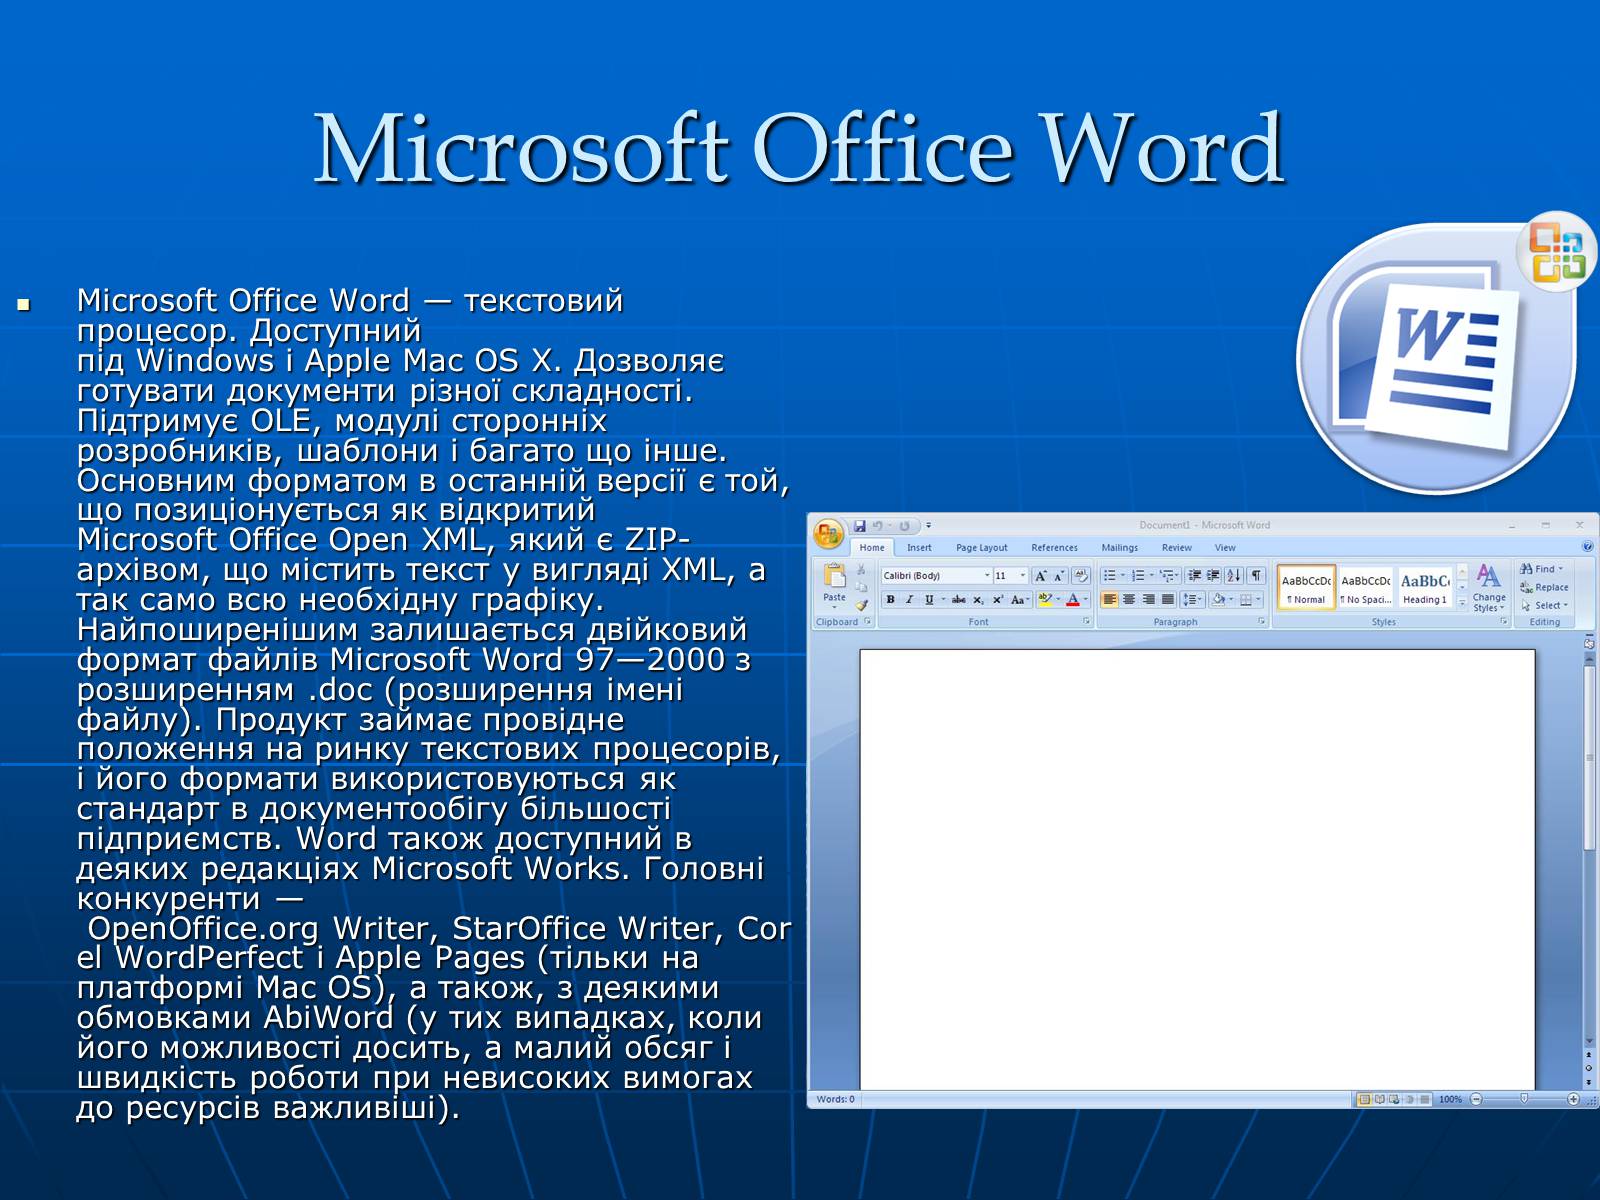 Текстовый редактор это приложение для создания. Текстовый процессор МС ворд. Текстовый редактор Microsoft Office Word. Текстовый процессор Microsoft Office Word. Текстовый процессор Word 2010.